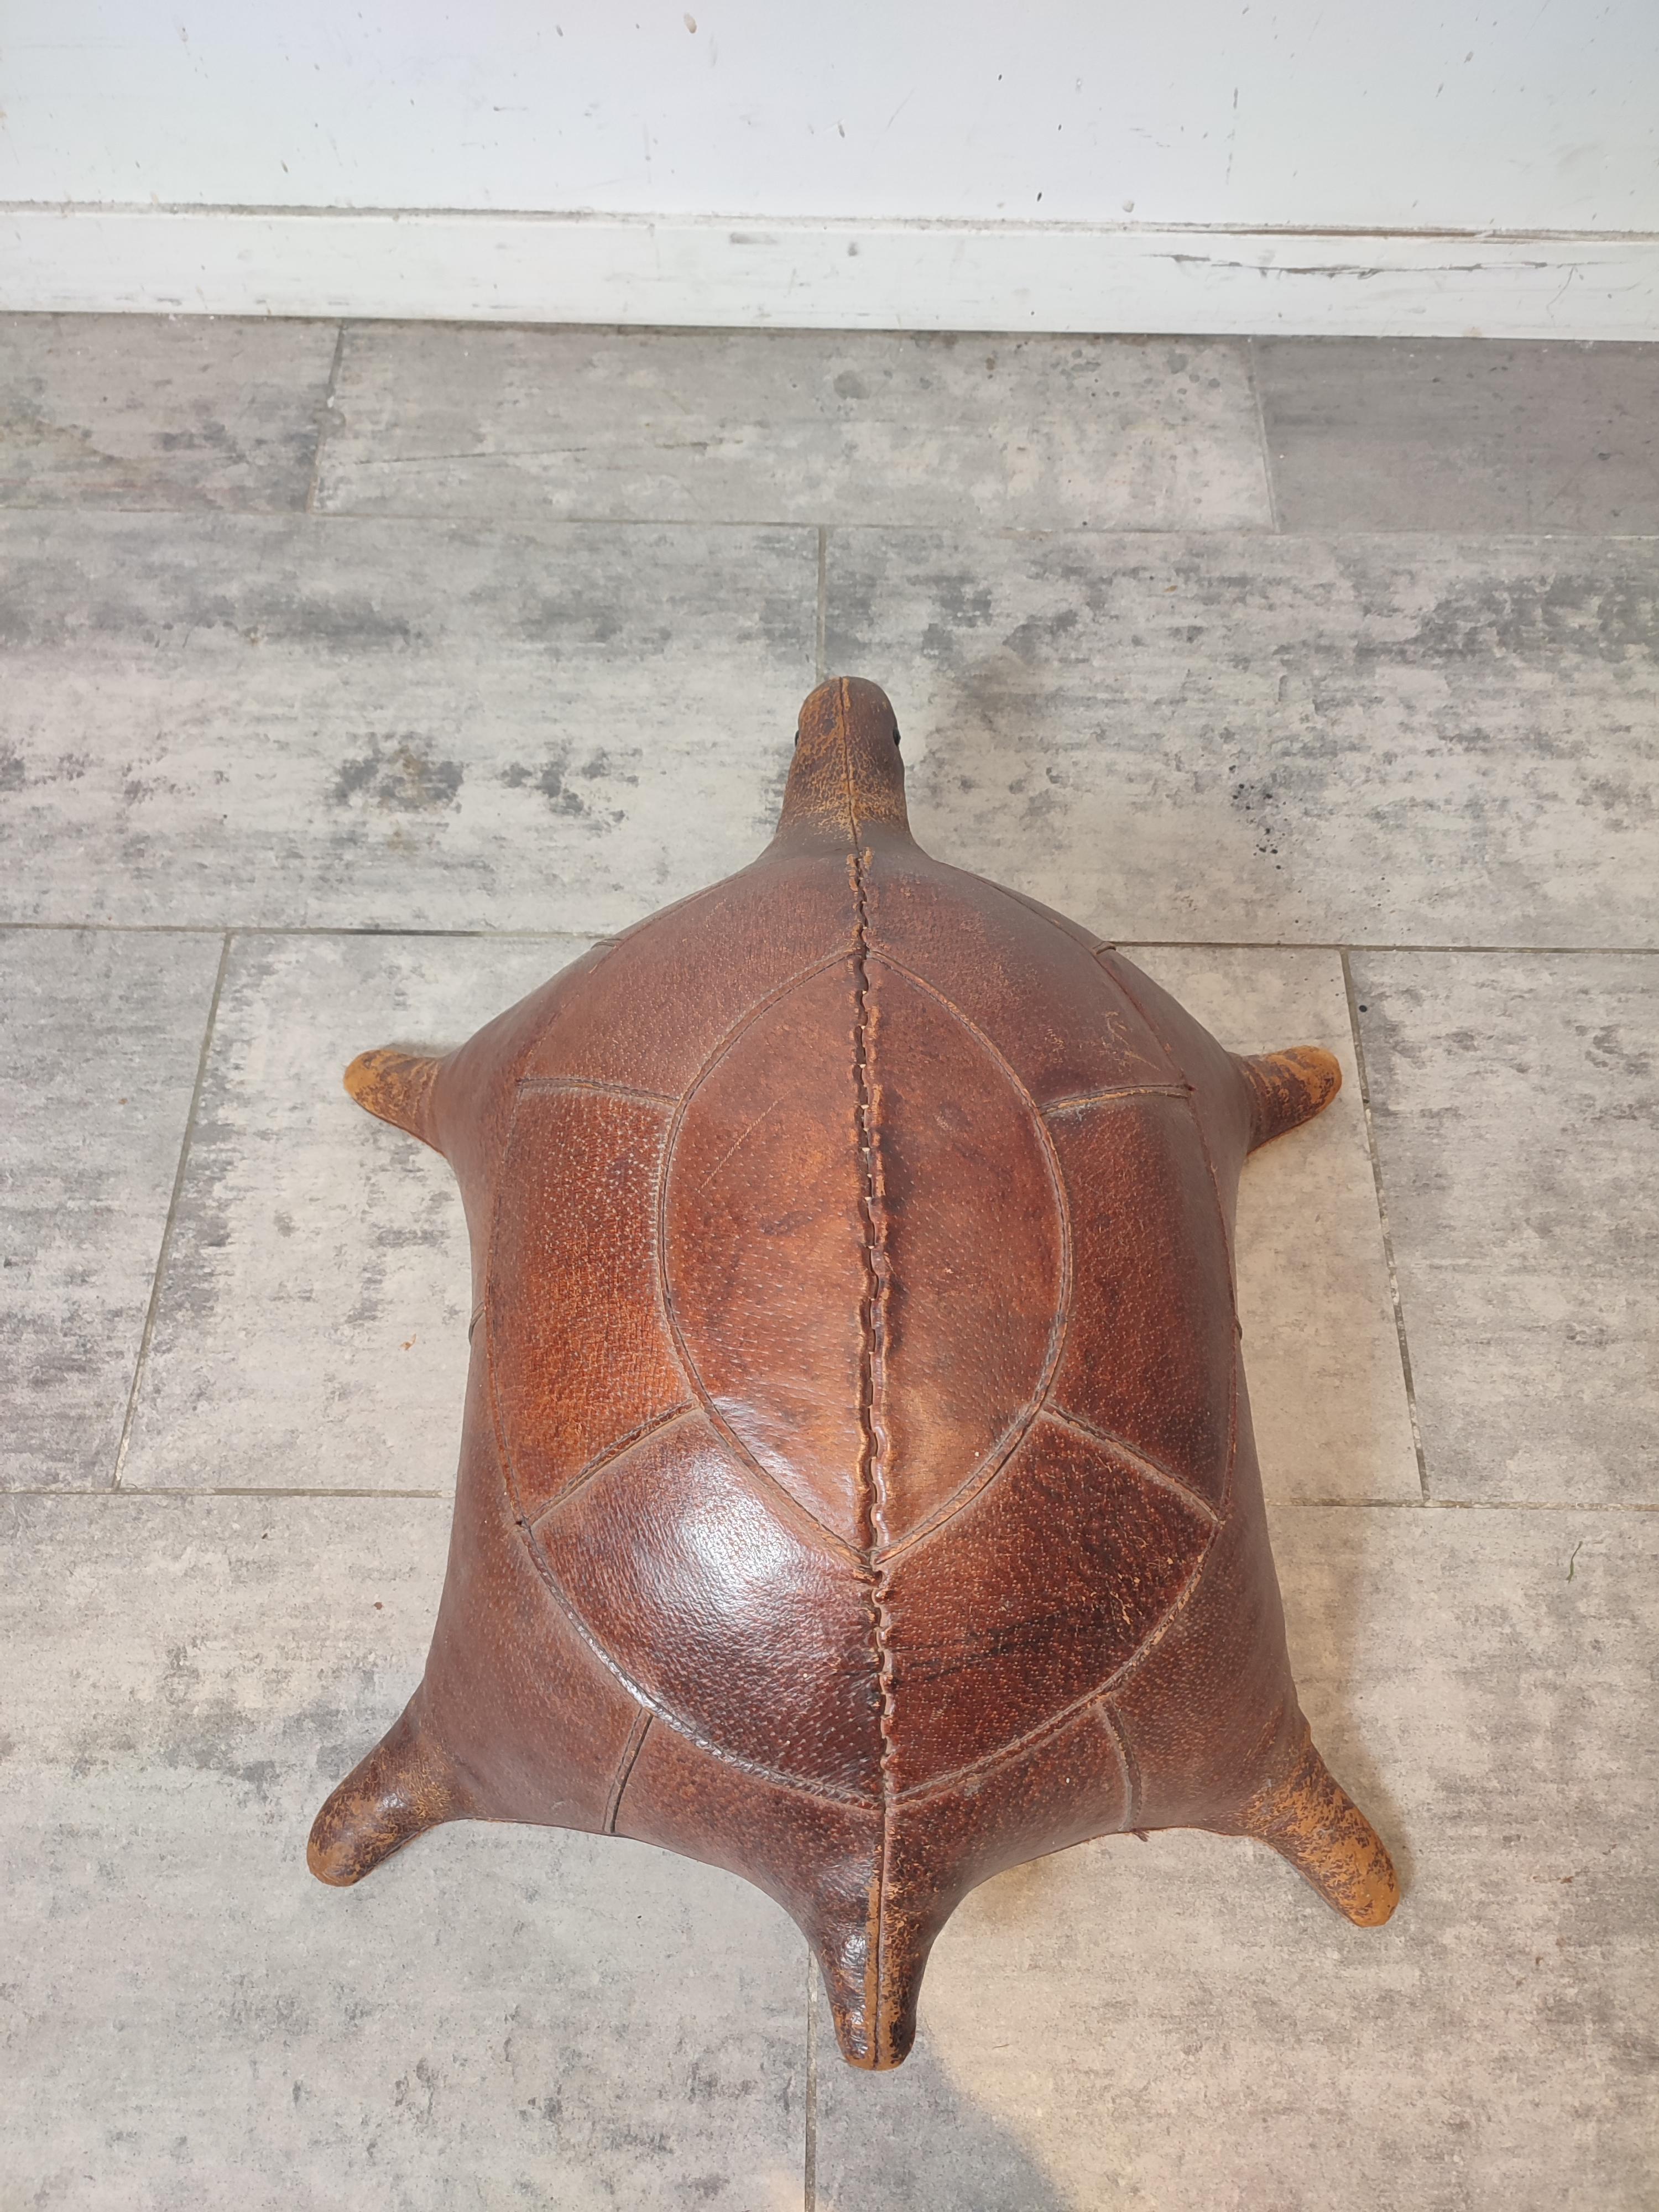 Einzigartiger Schildkrötenhocker aus patiniertem Leder, sehr guter Zustand.
Kostenloser Versand.